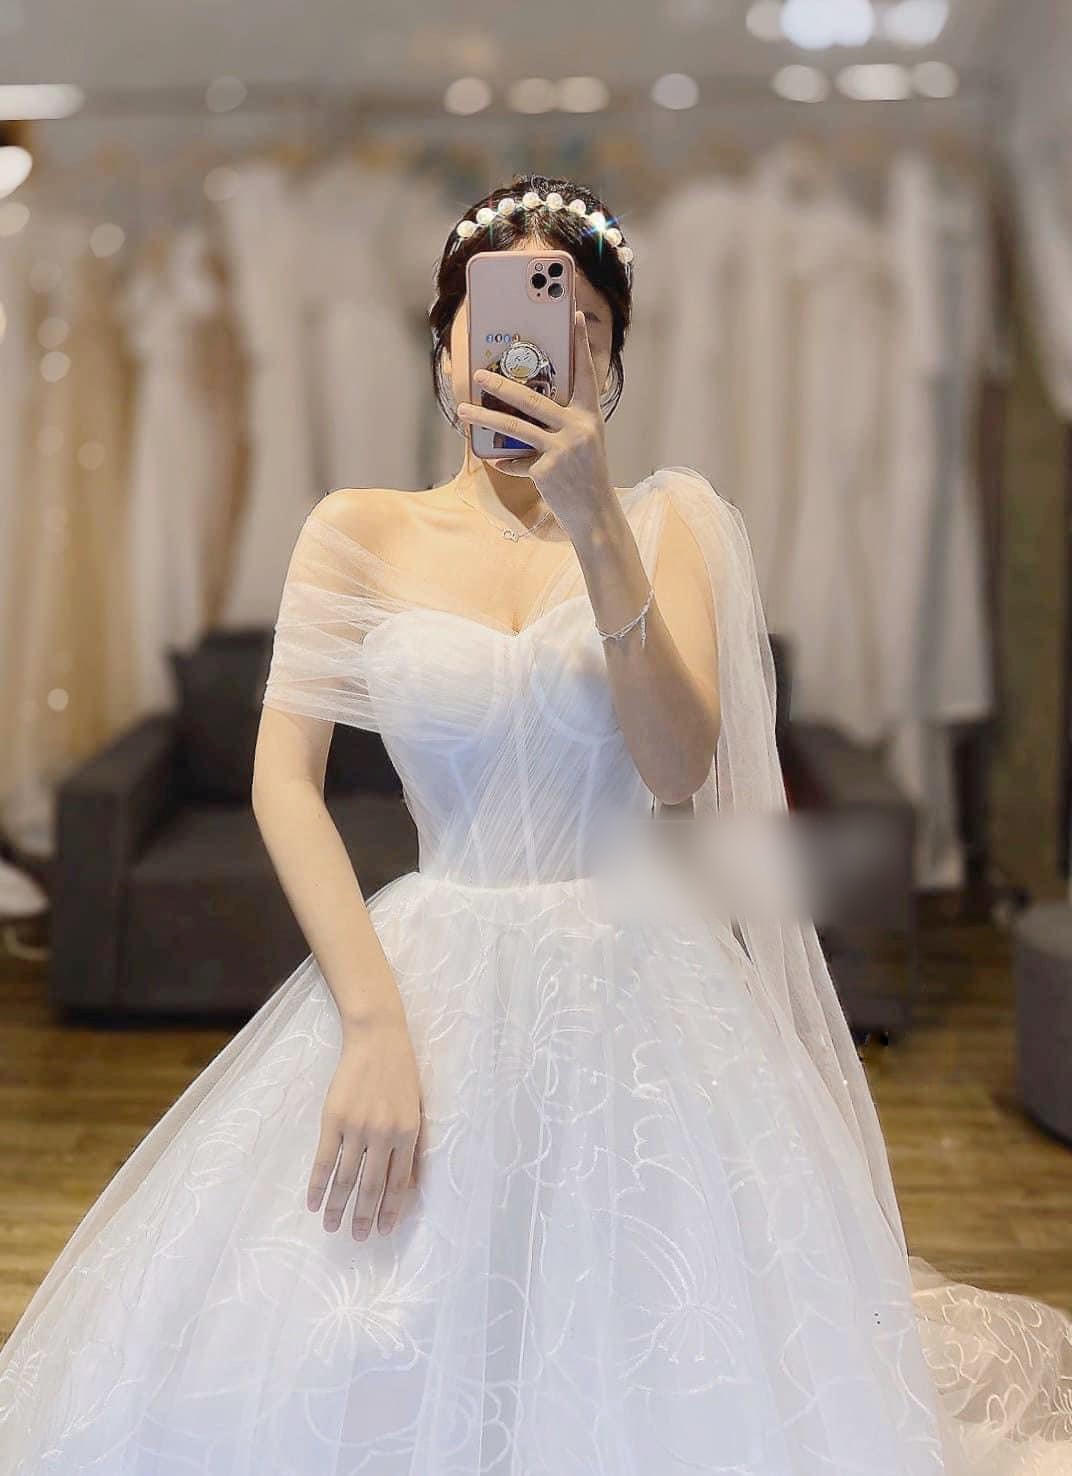 Bóc giá hai chiếc váy cưới trong mơ của chị đẹp Son Ye Jin